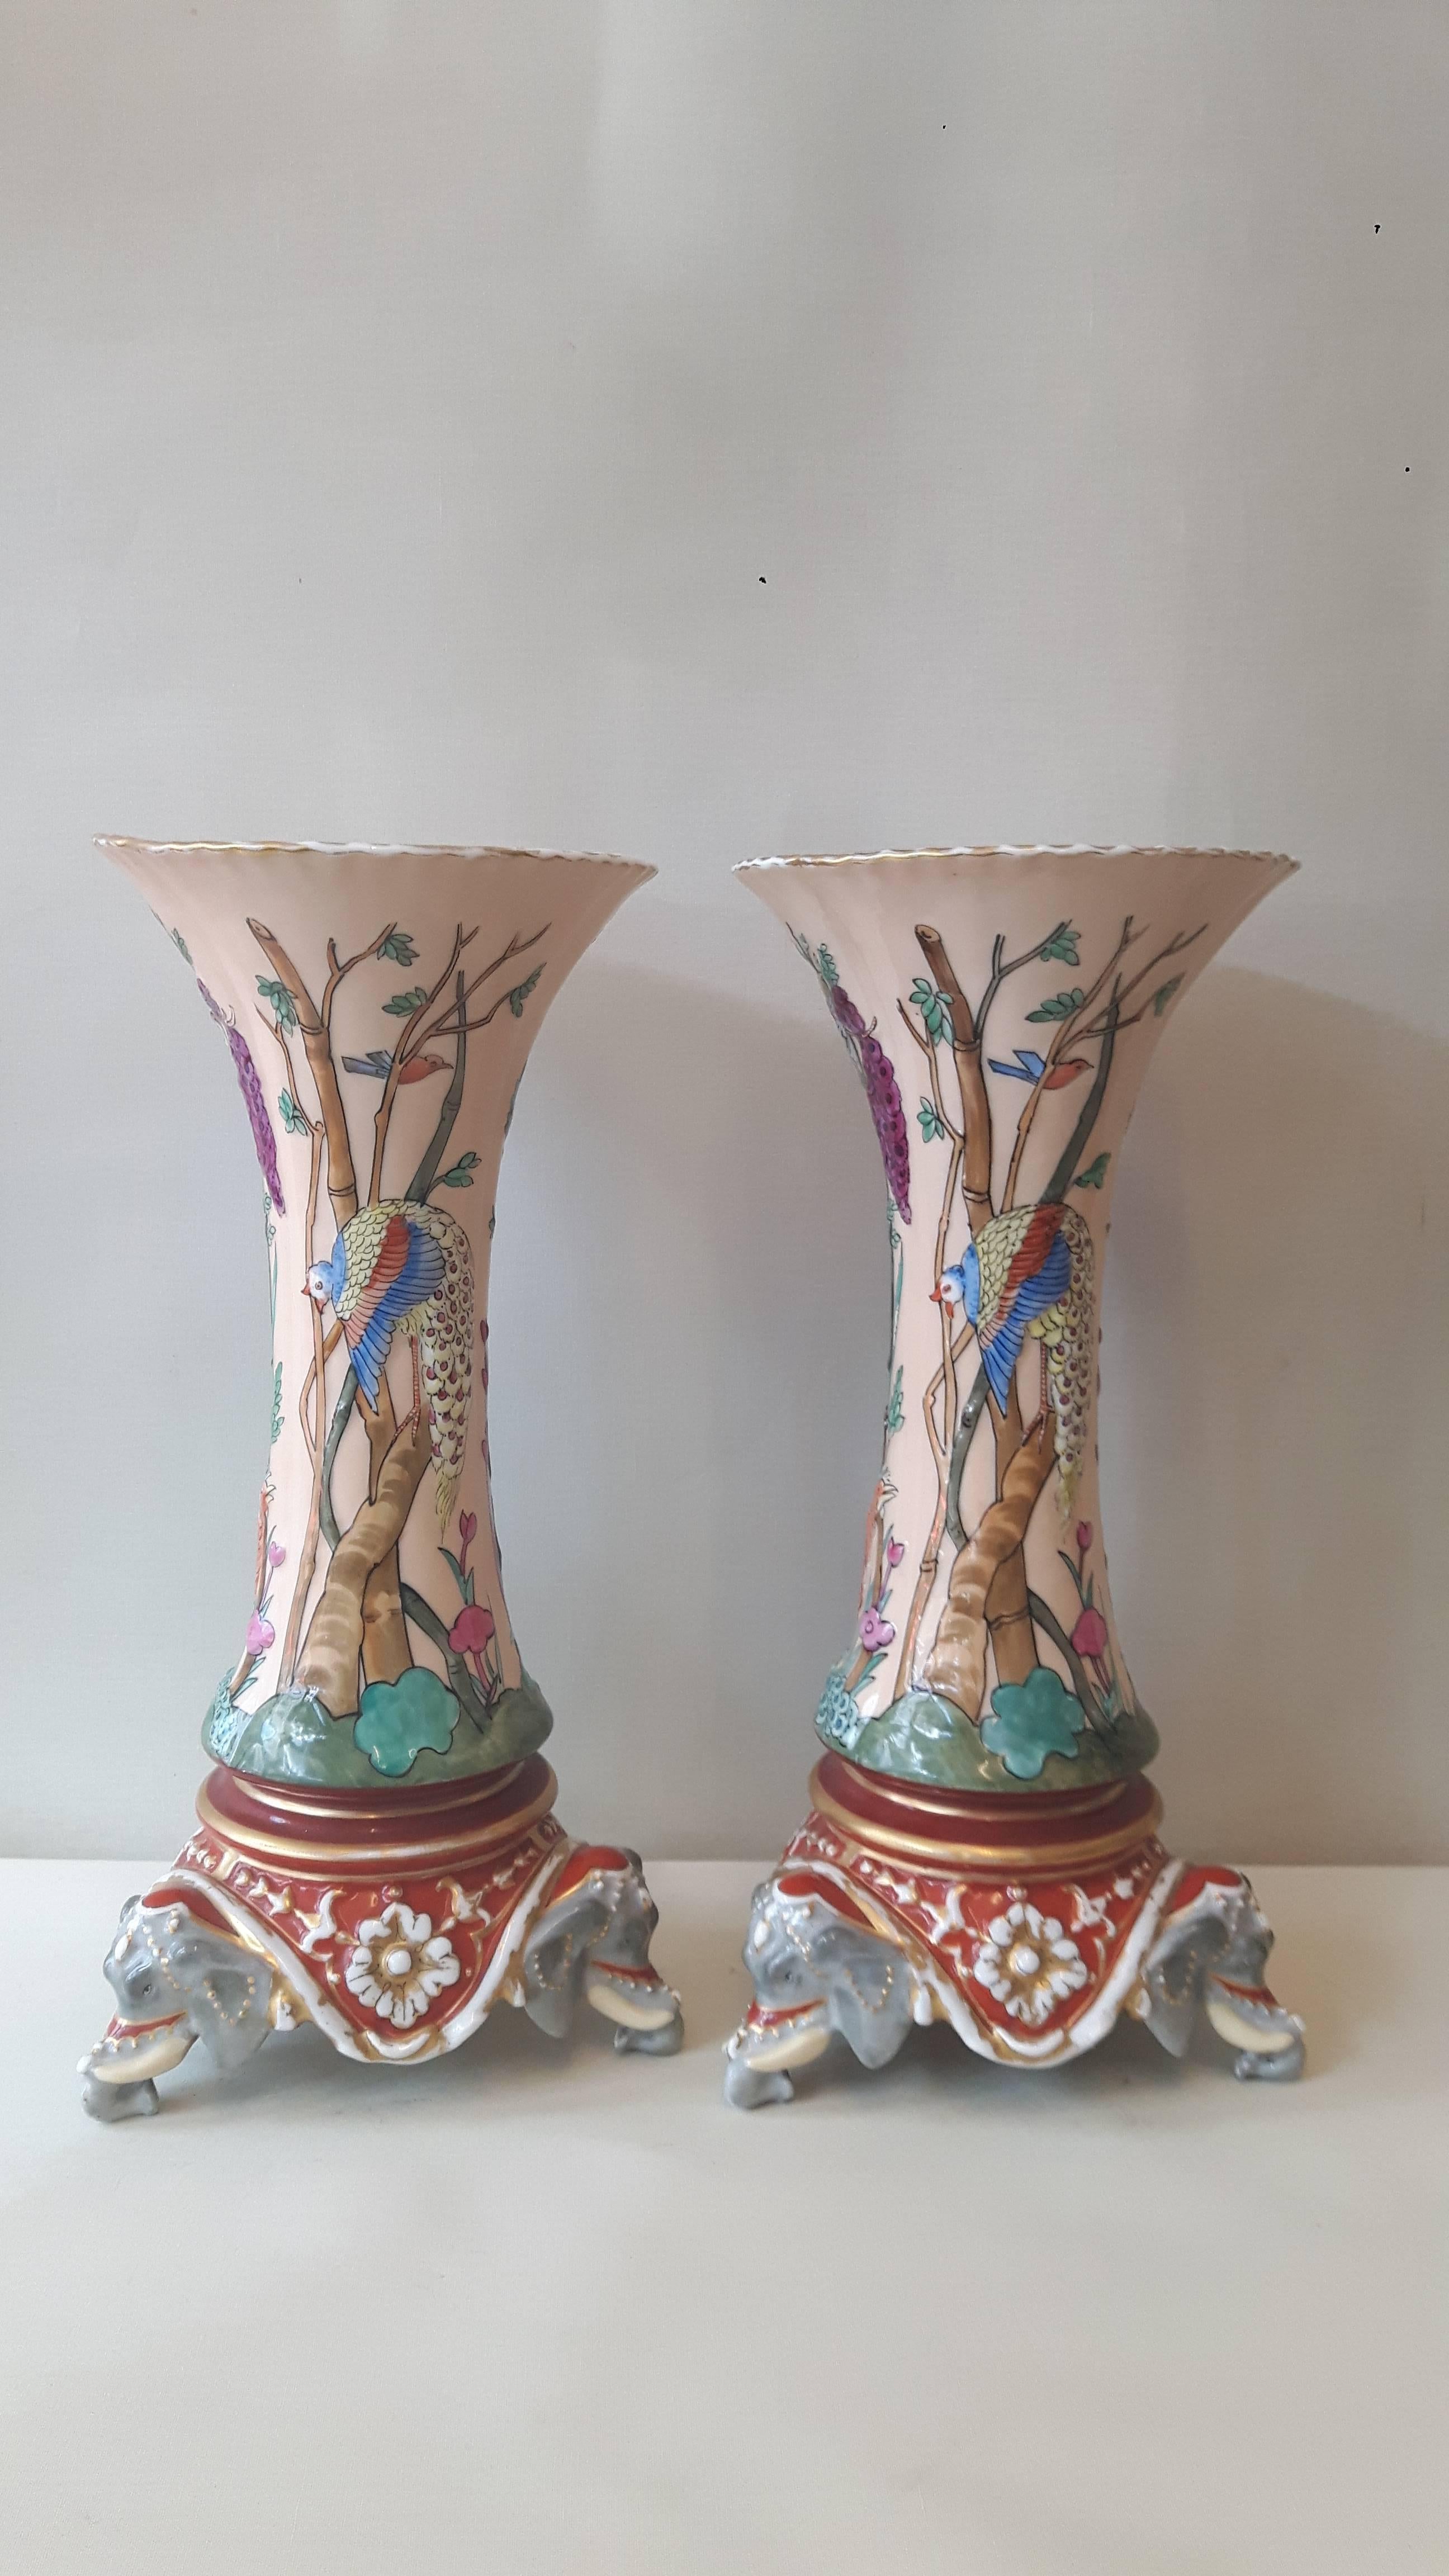 Une paire extrêmement inhabituelle de vases en forme de trompette en porcelaine de Paris dans le style indien Mogul du 18e siècle, décorés à la main d'oiseaux exotiques dans des arbres et du feuillage, le corps reposant sur des têtes d'éléphants en